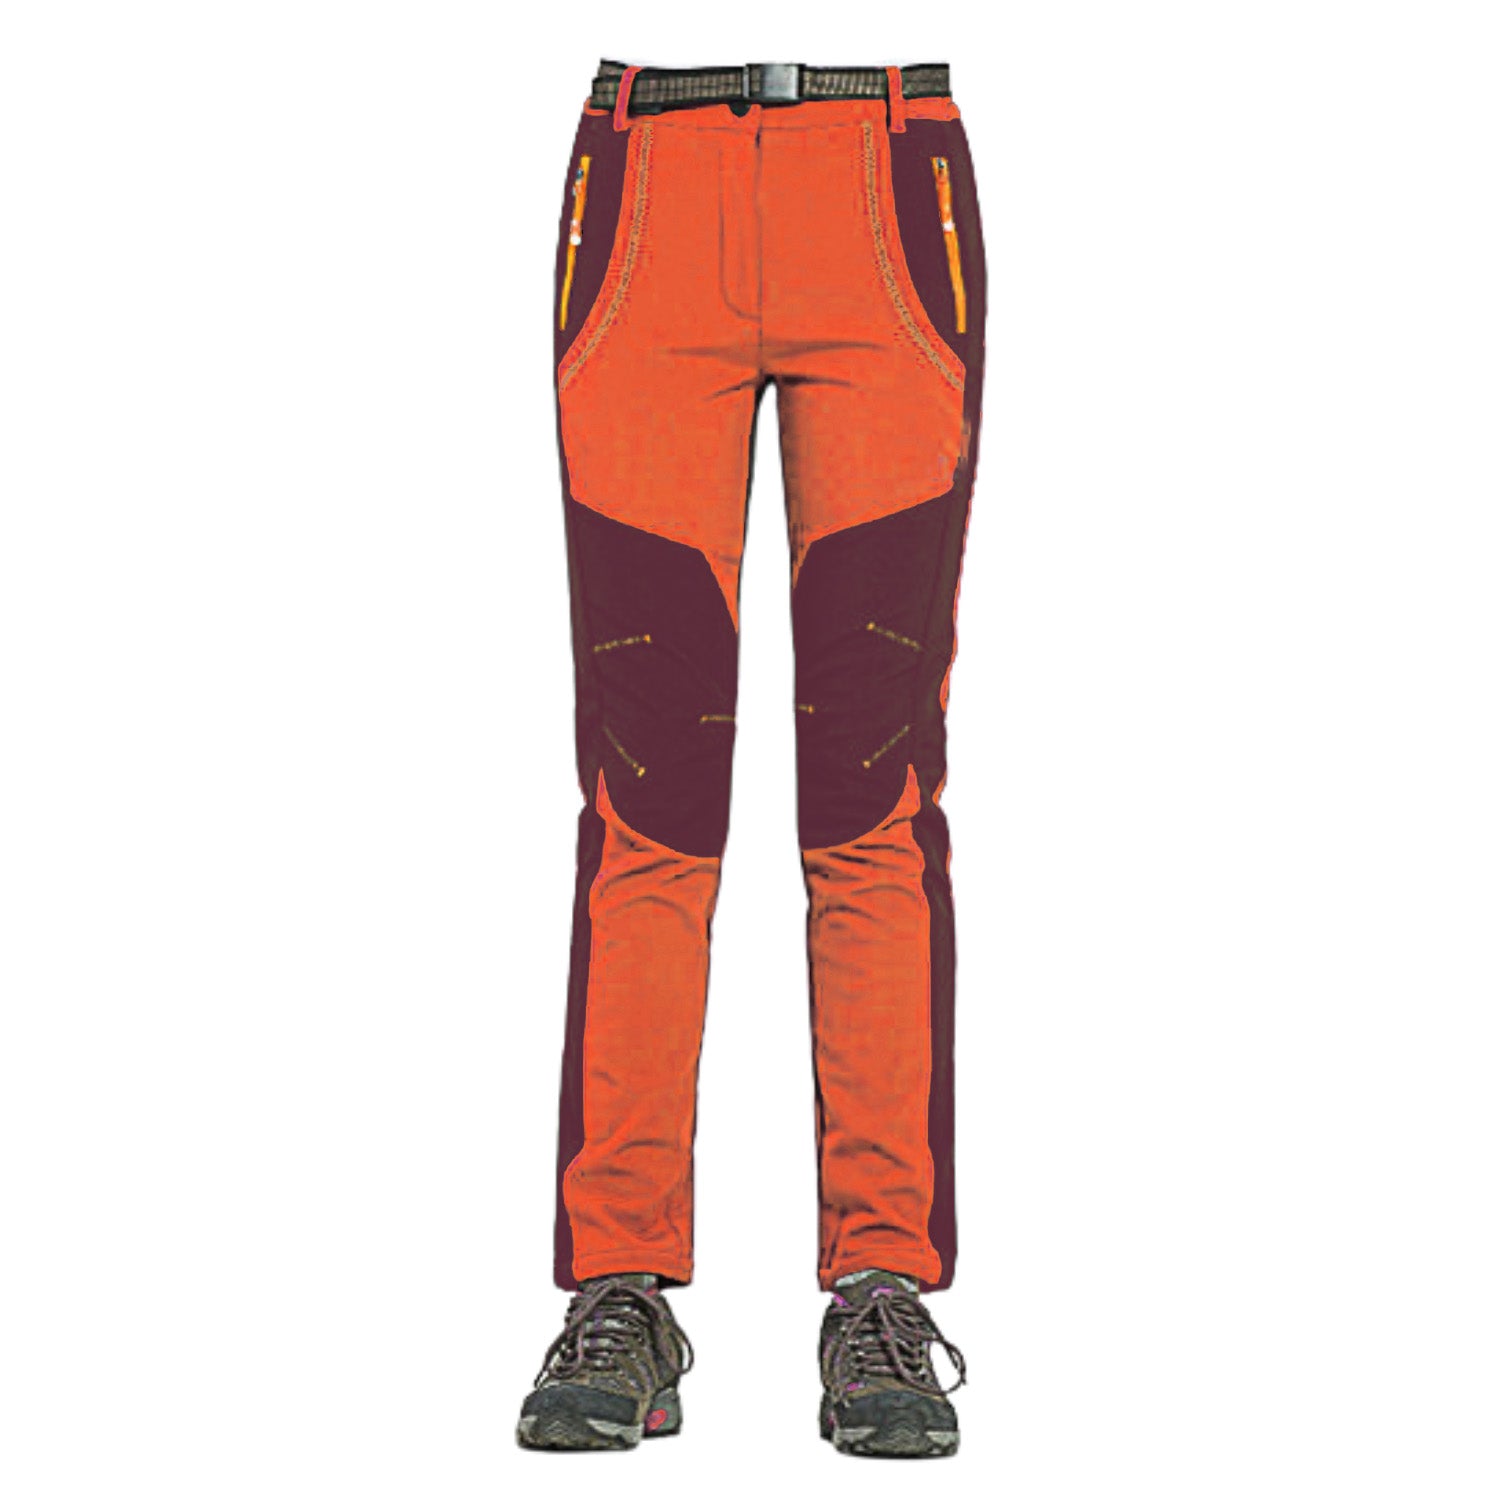 Buy Gokyo K2 Cold Weather Trekking & Outdoor Pants in Orange - Women Orange | Trekking & Hiking Pants at Gokyo Outdoor Clothing & Gear